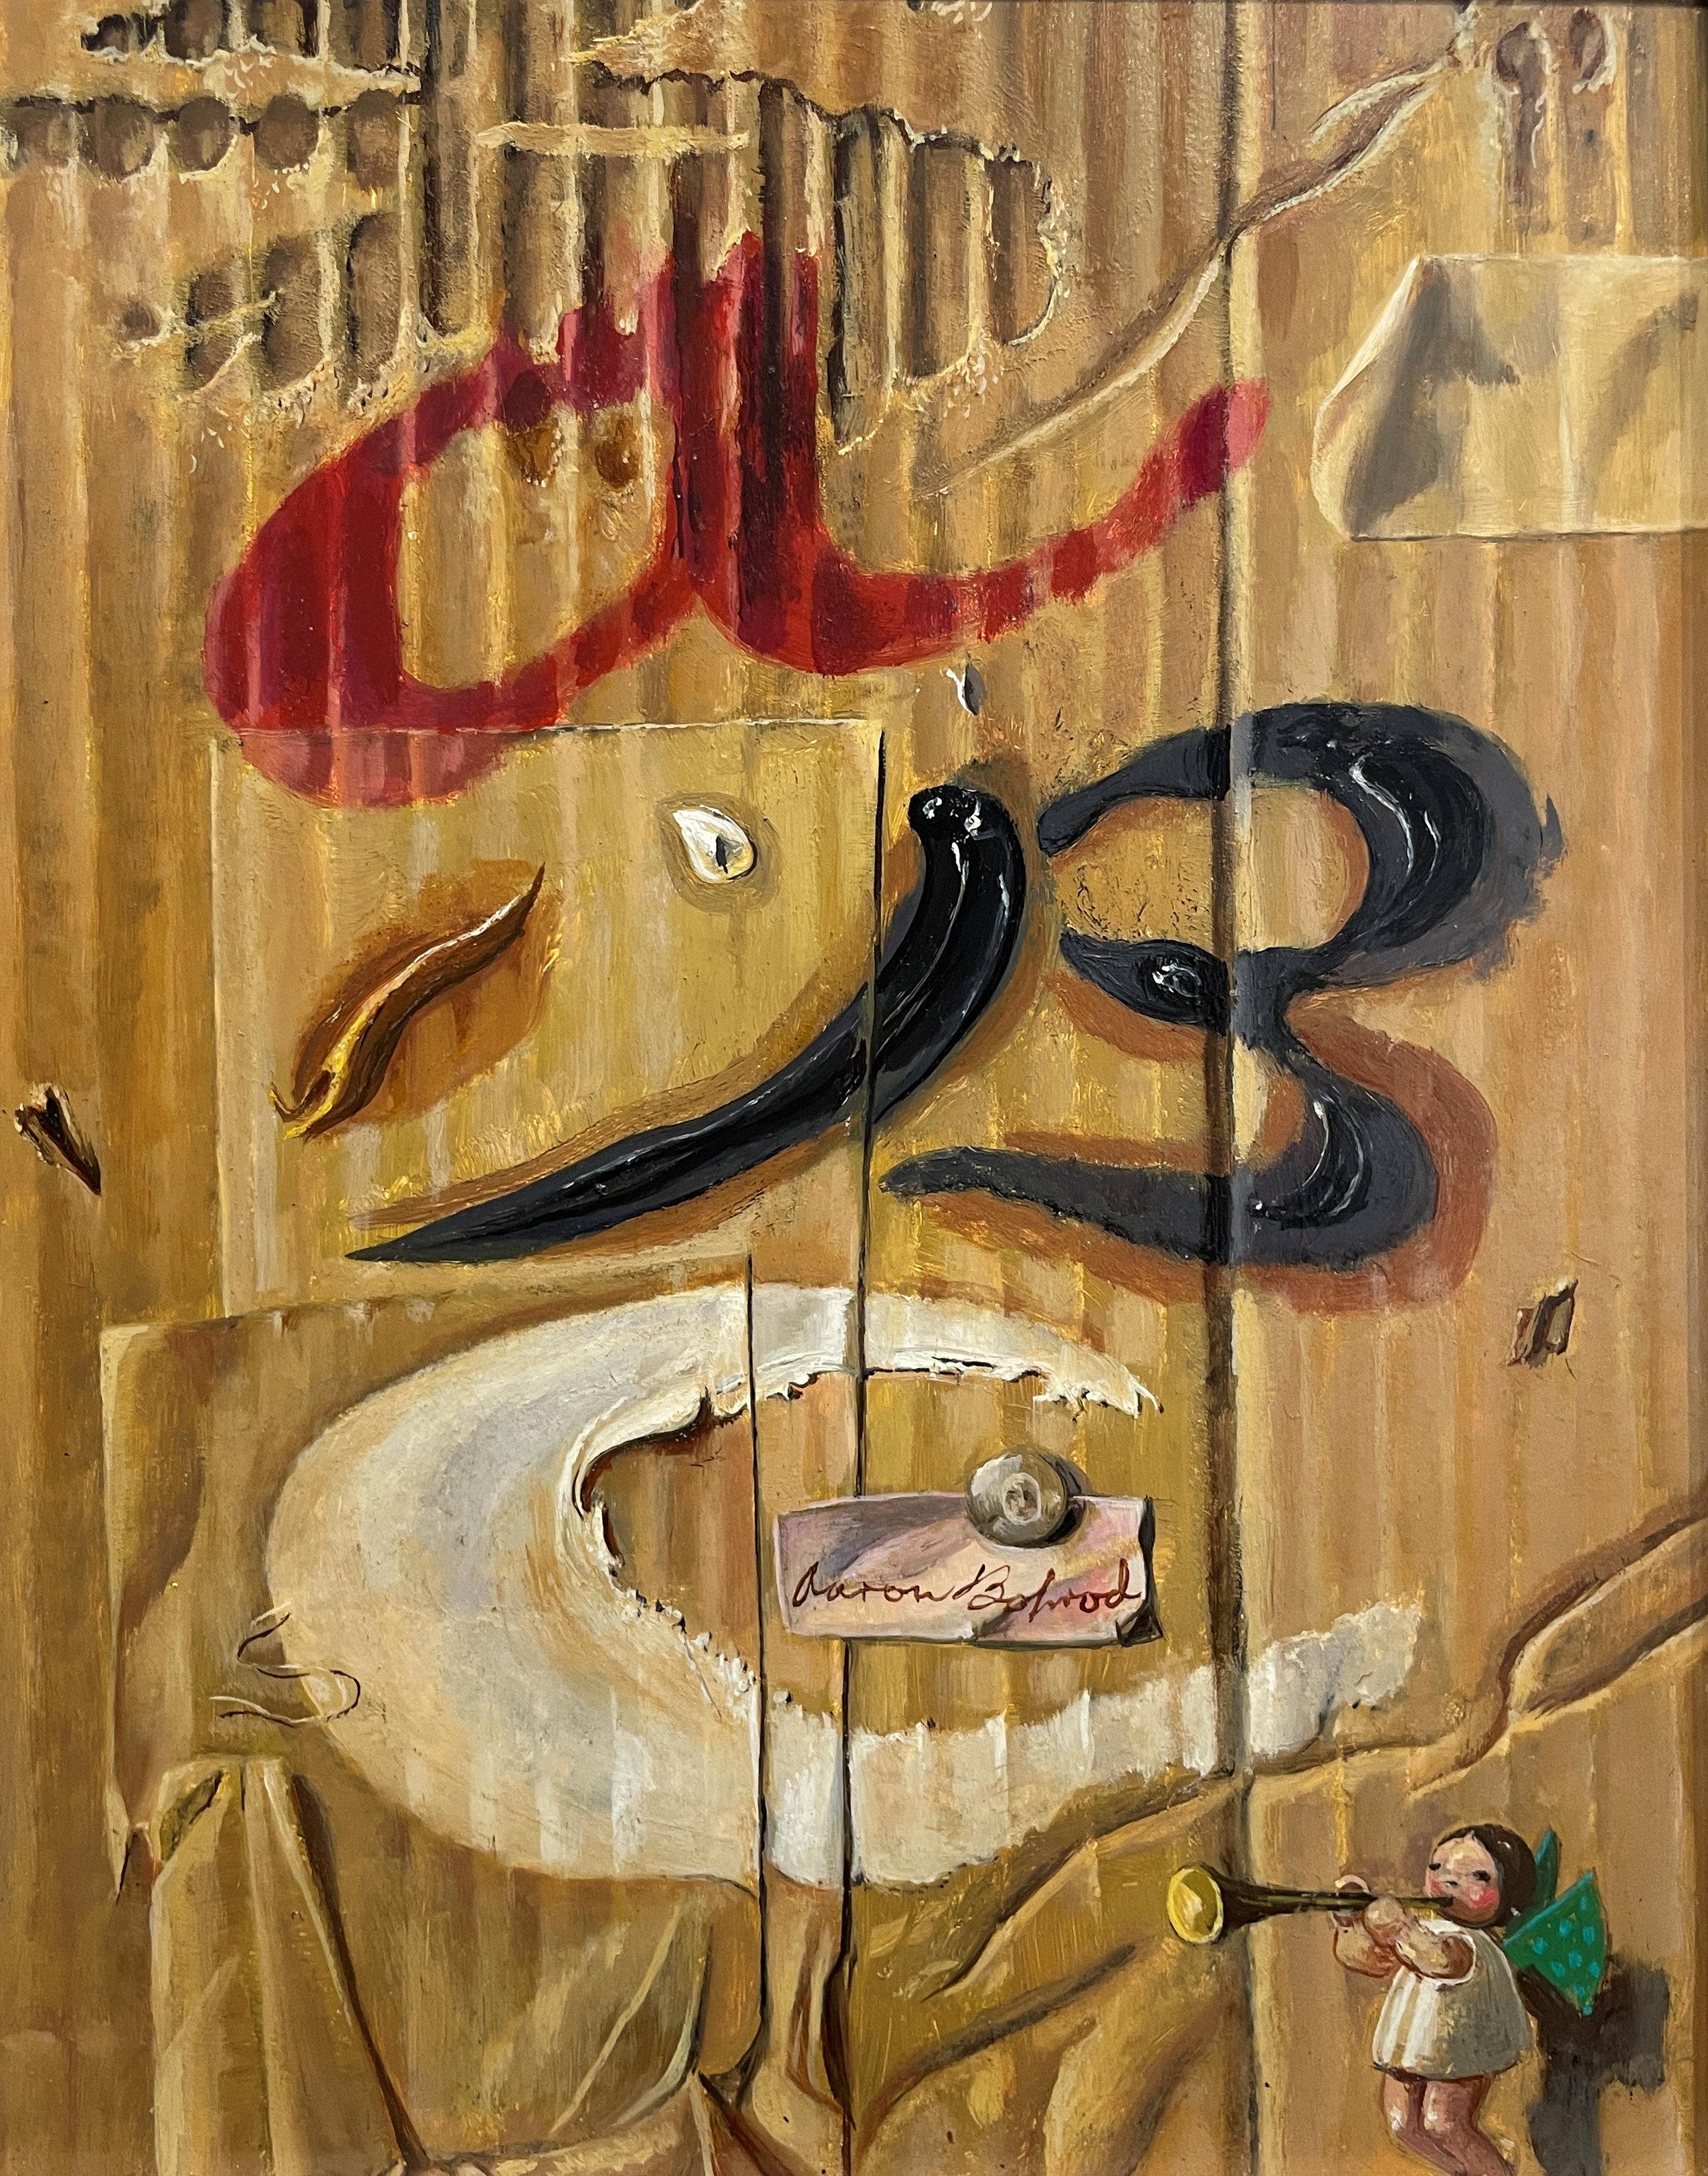 Aaron Bohrod
Die Anfänge, 1990
Gezeichnetes Zentrum
Öl auf Gessokarton
10 x 8 Zoll

Aaron Bohrods Arbeit ist nicht auf einen Stil oder ein Medium beschränkt. Zunächst als regionalistischer Maler amerikanischer Szenen, insbesondere aus seiner